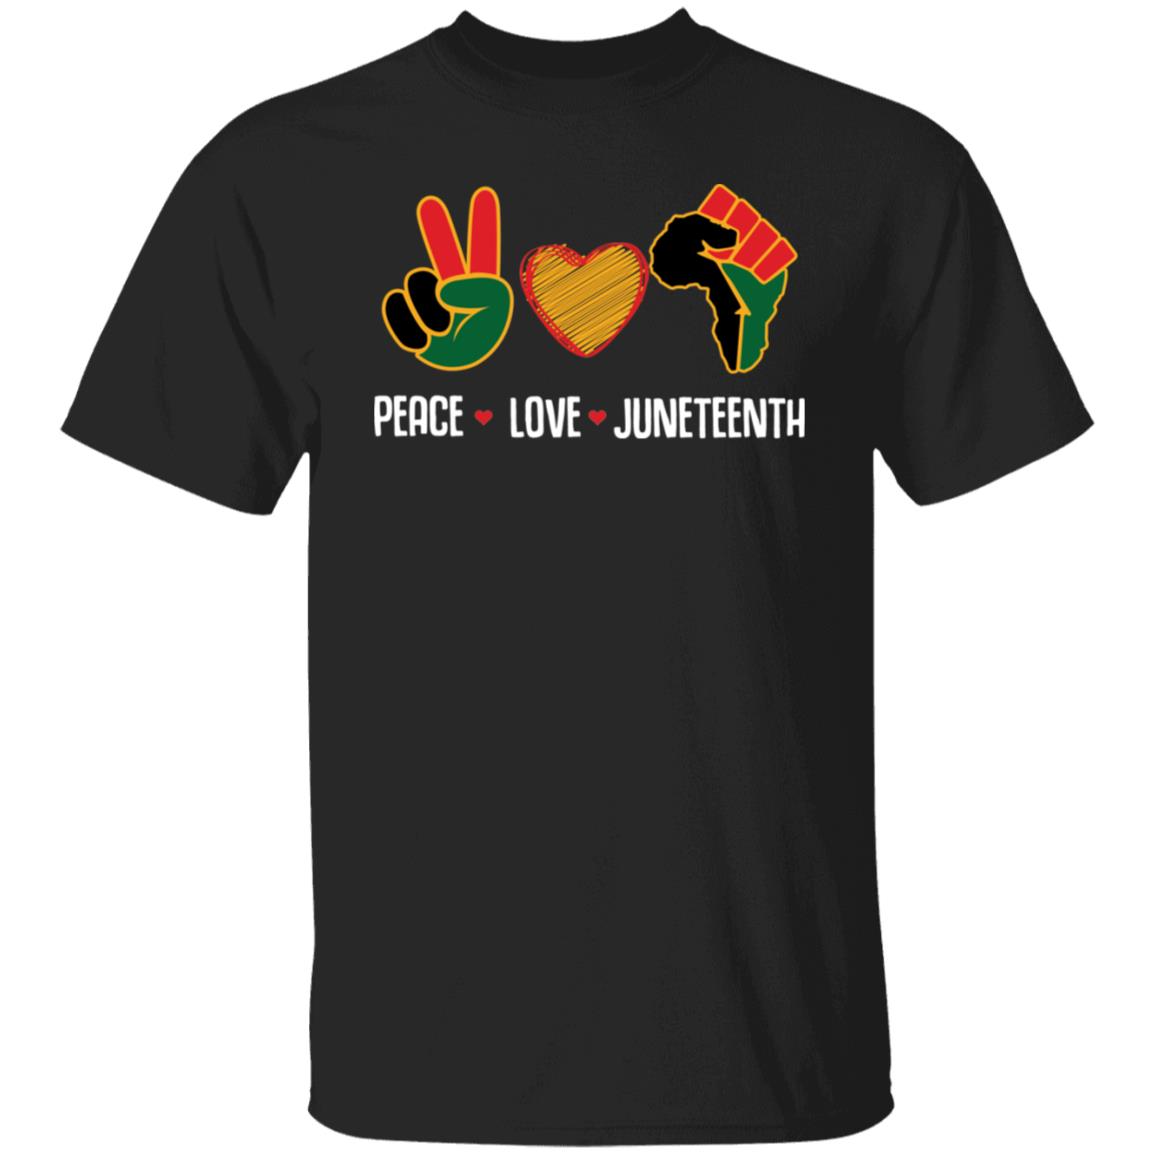 Peace Love Juneteenth T-shirt Apparel Gearment Unisex T-Shirt Black S